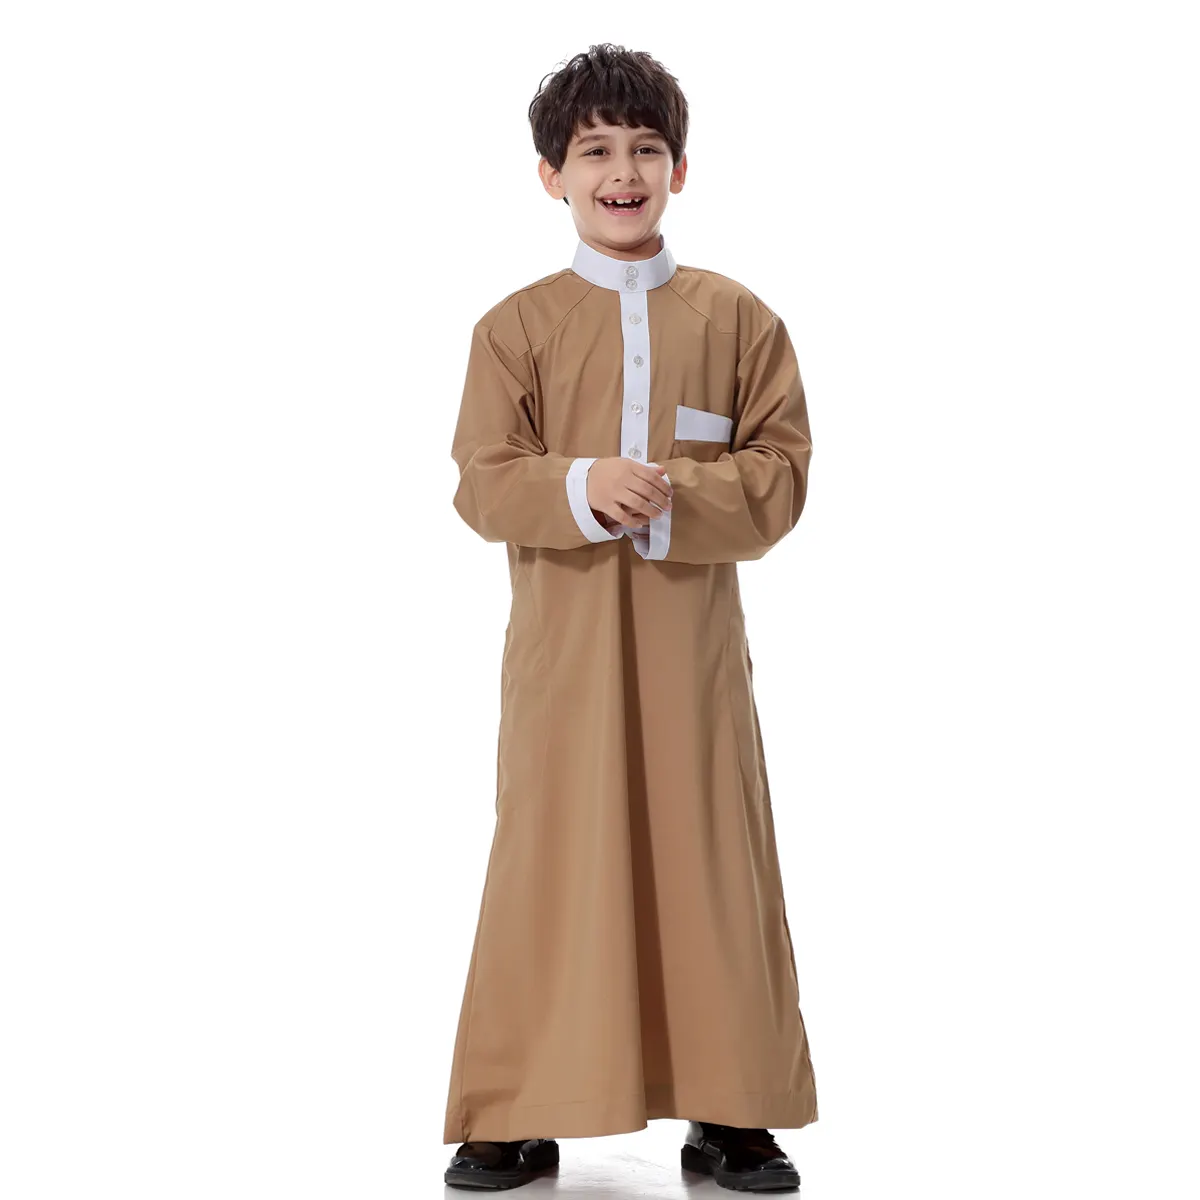 Muslimisches Kinder tuch Neues Design Jubba Kinder Islamische Jungen Normale Kleidung Großer Junge Thobe